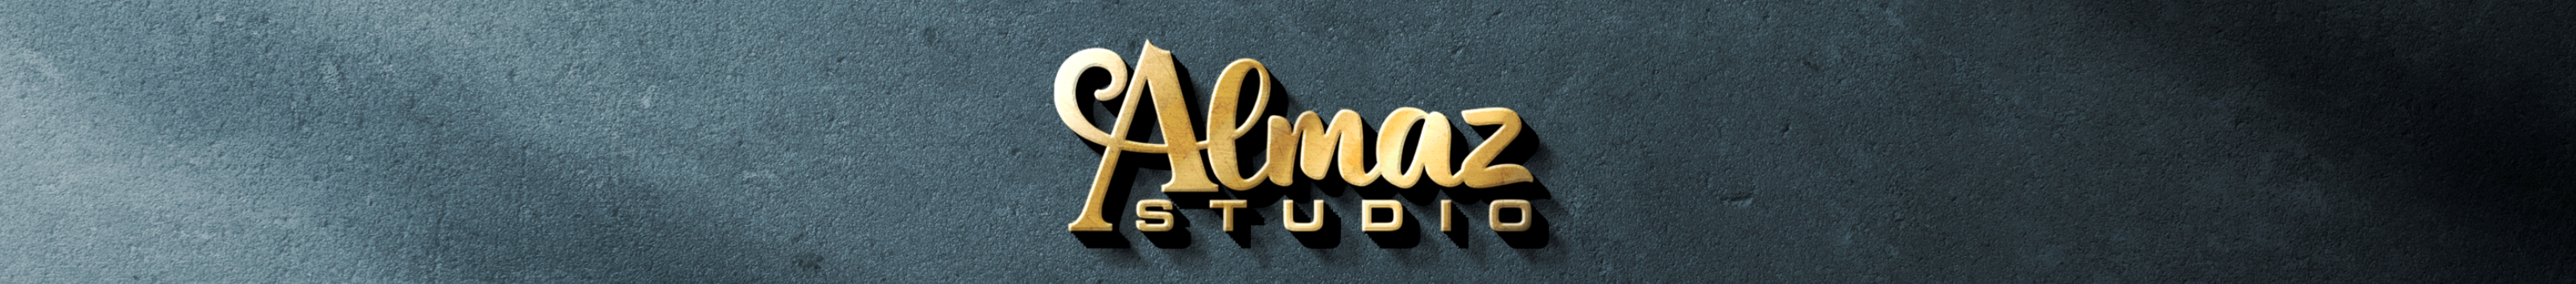 Almaz Studio's profile banner